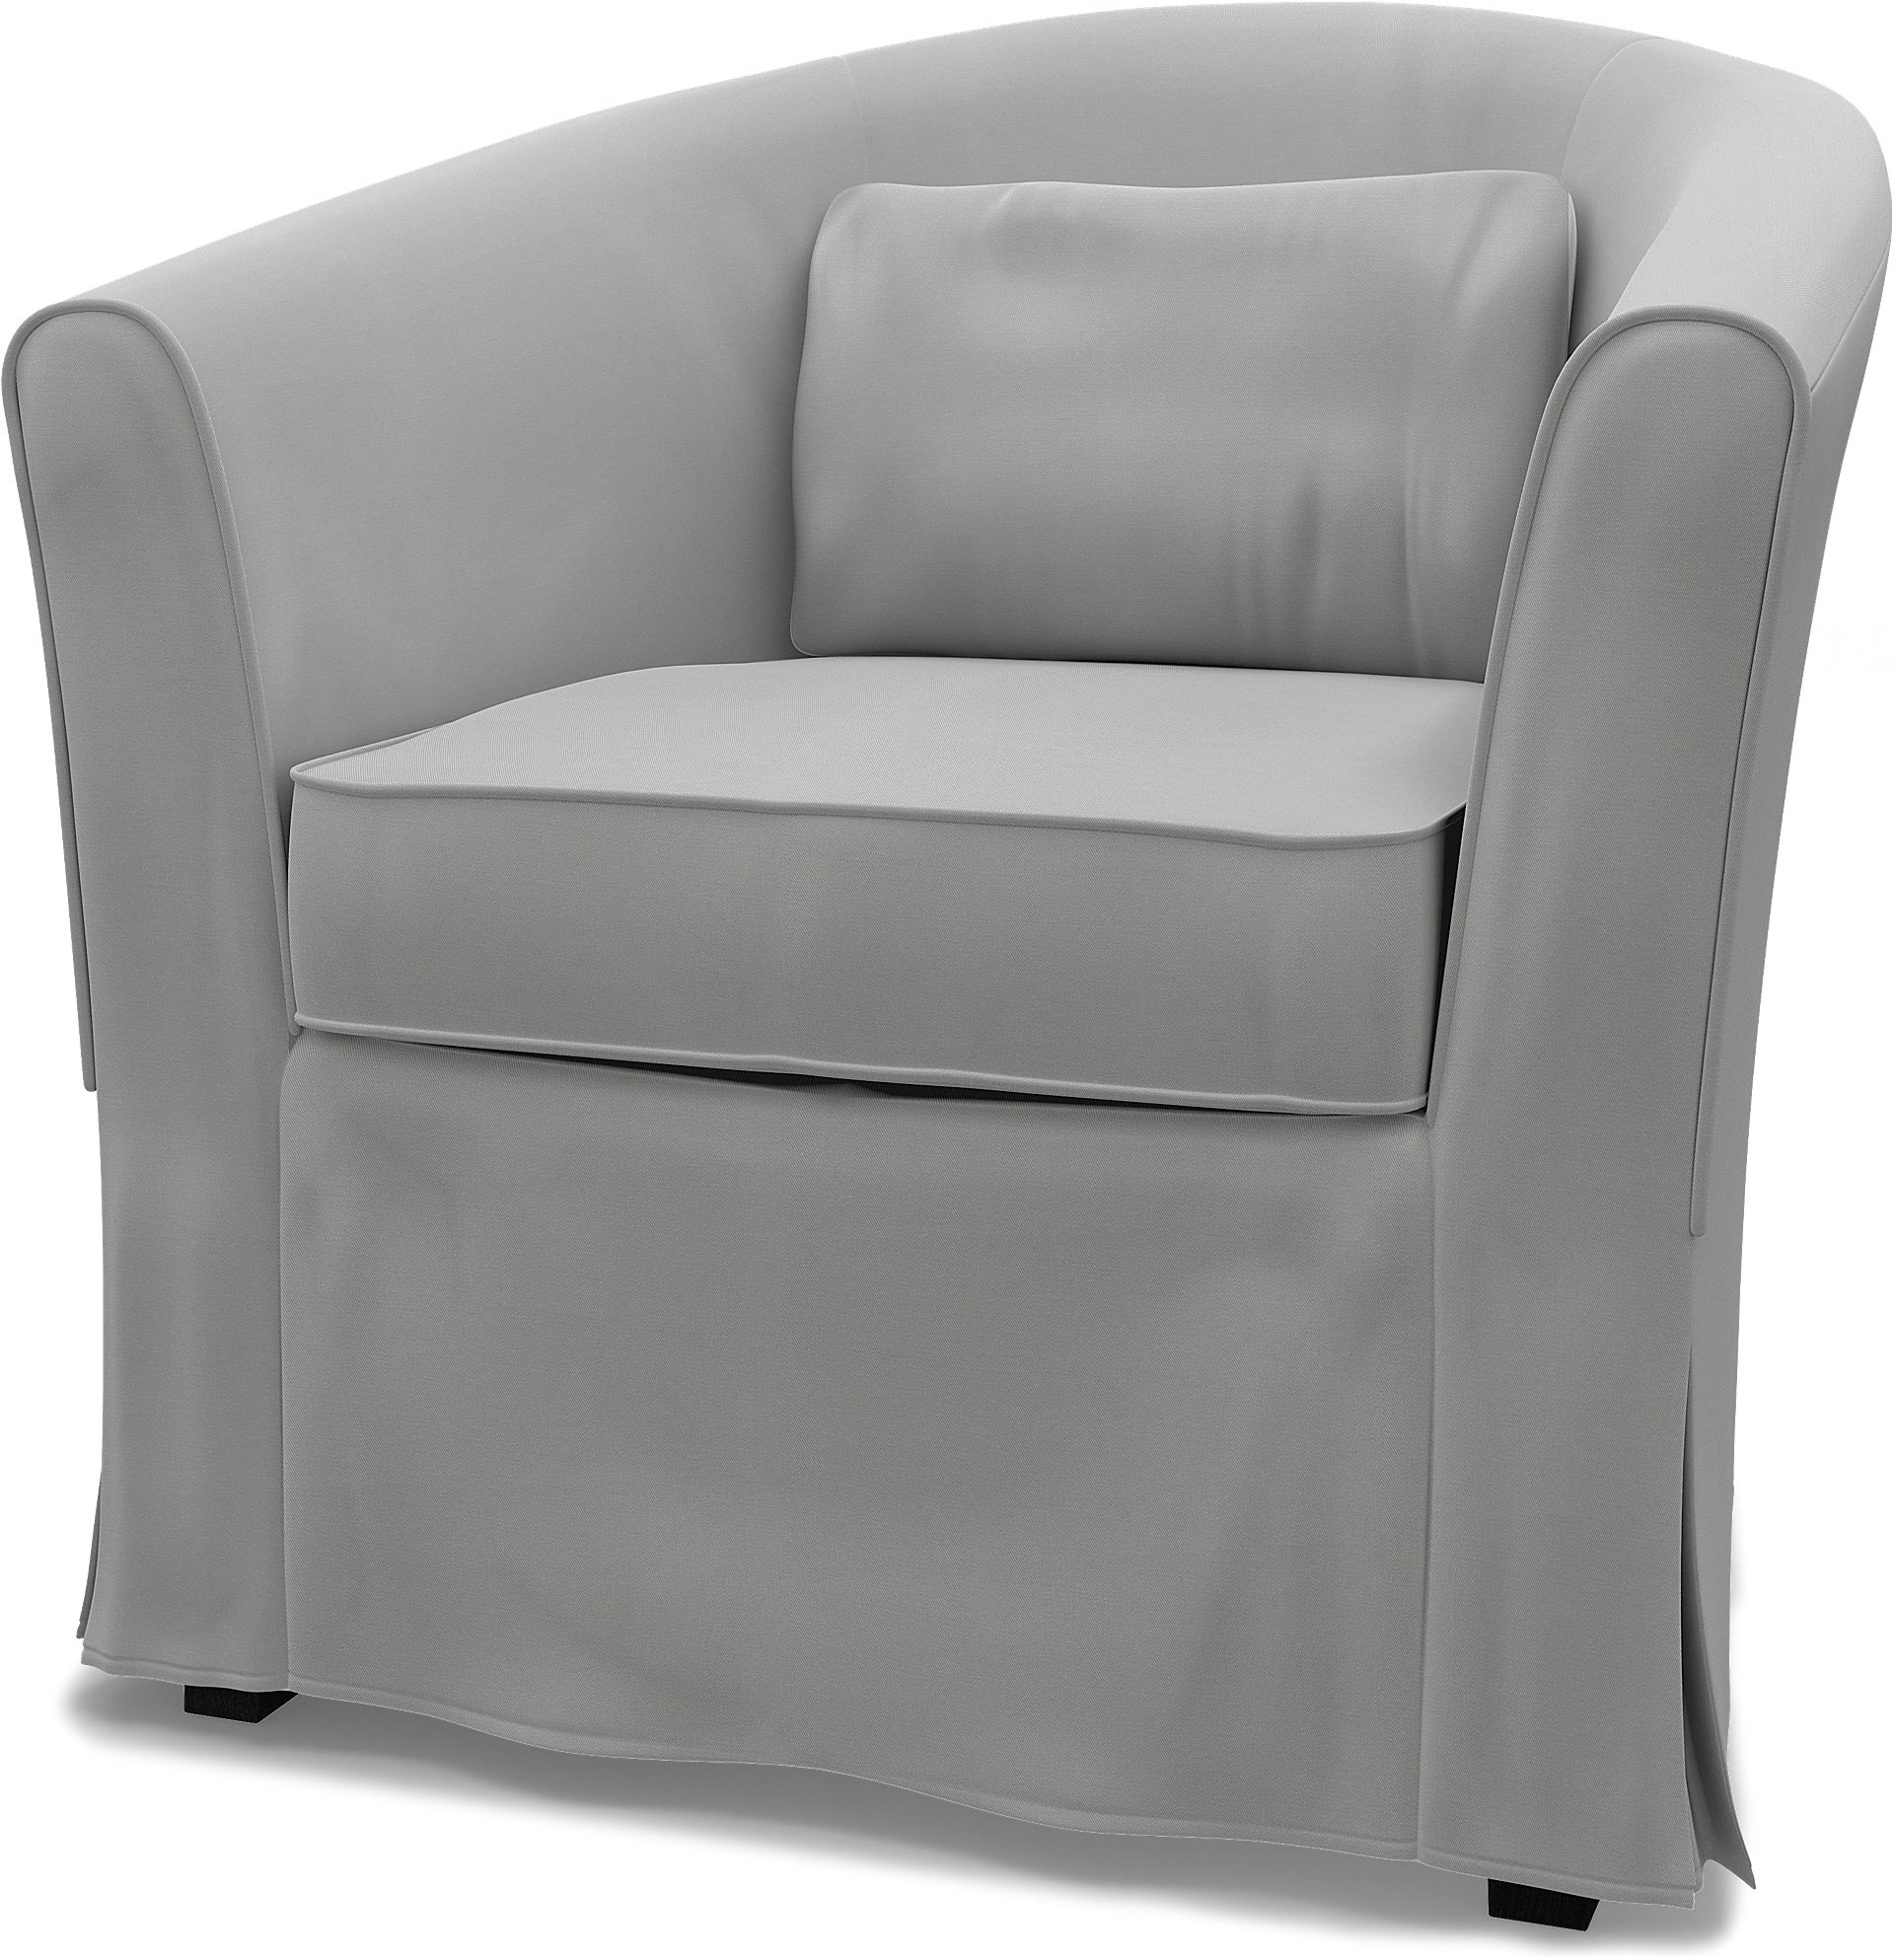 IKEA - Tullsta Armchair Cover, Silver Grey, Cotton - Bemz